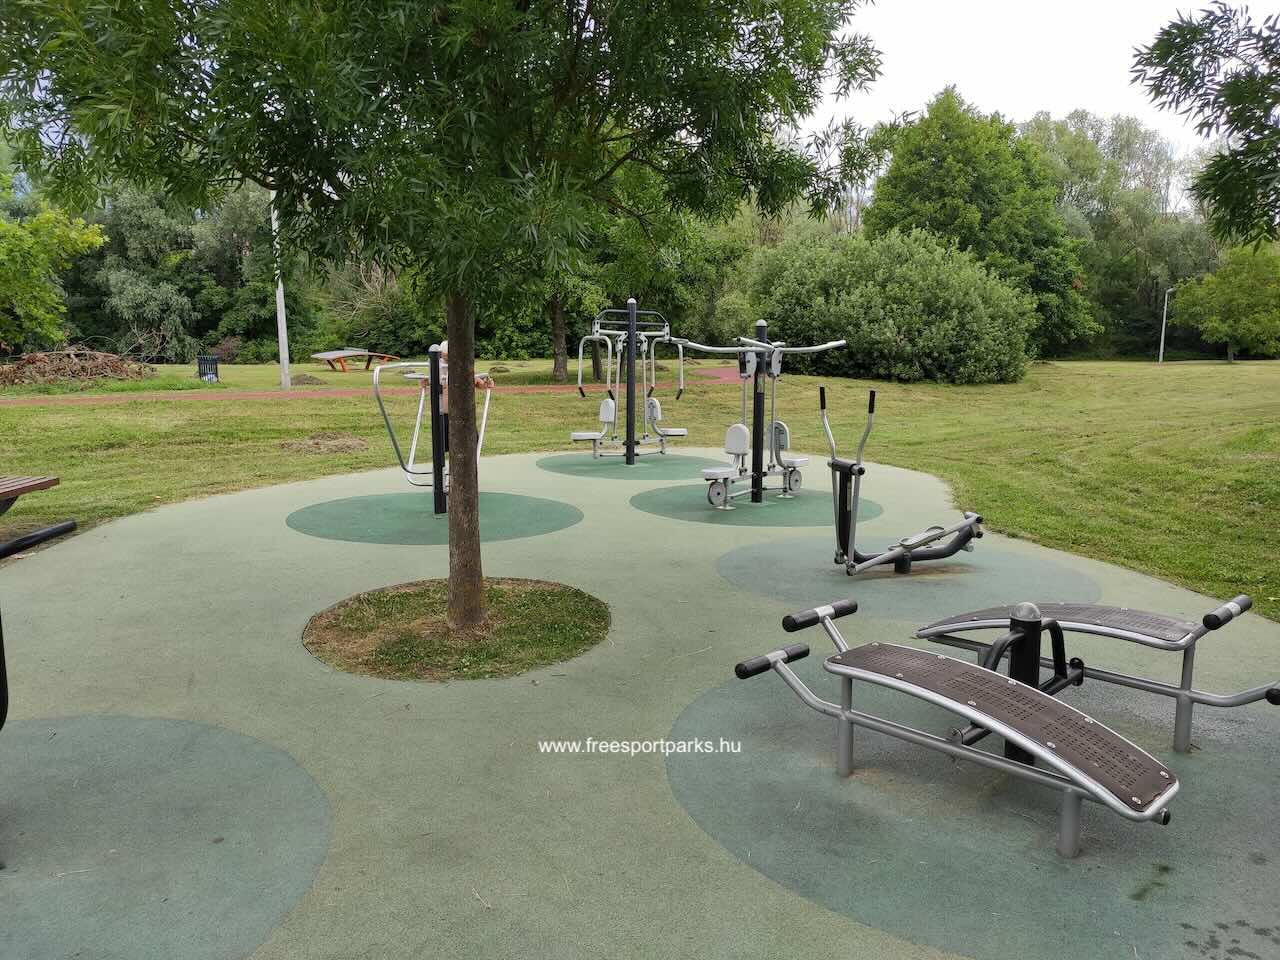 fitneszpark eszközei a gumírozott talajon a Kaposvári Városligetben - Free Sport Parks Térkép